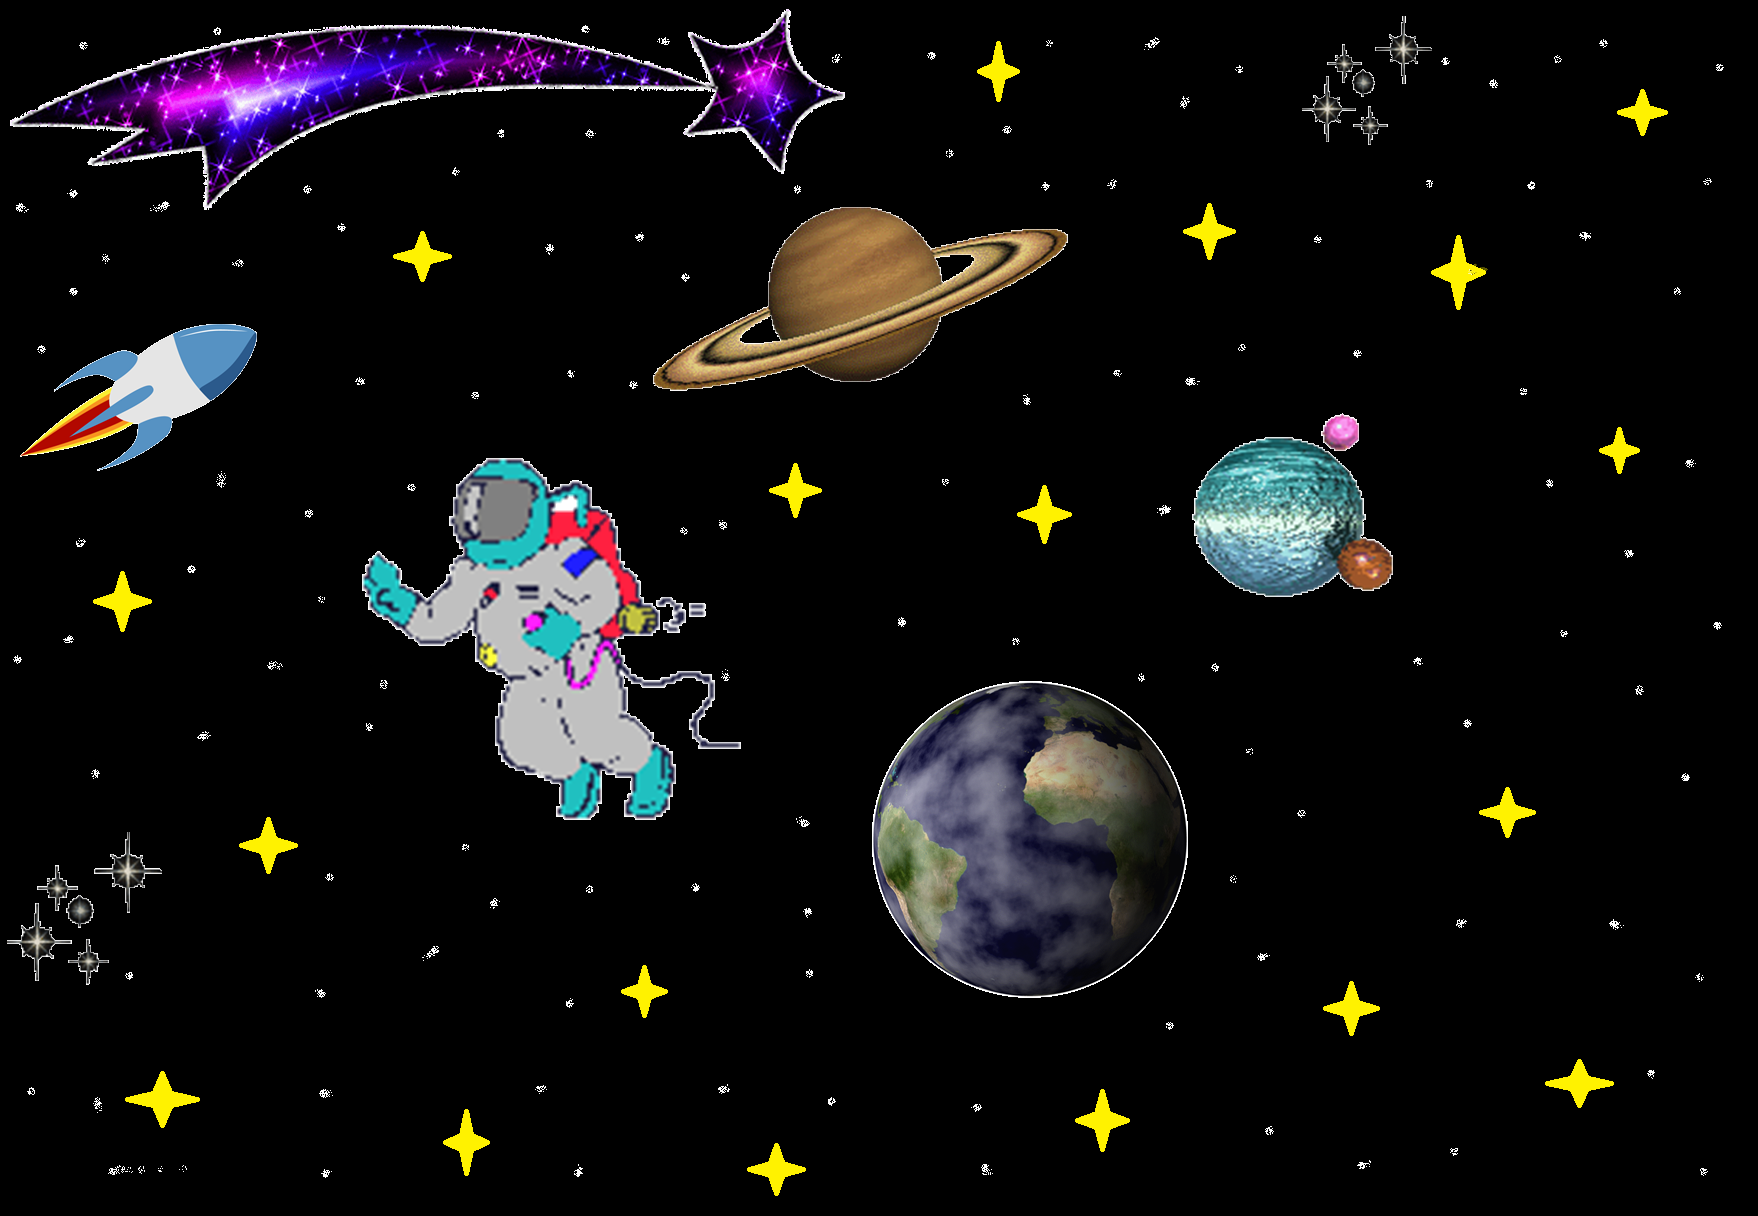 Картинки на тему космос для дошкольников. Детям о космосе. Космос для малышей. Космос для детей дошкольного возраста. Тема космос для детей.